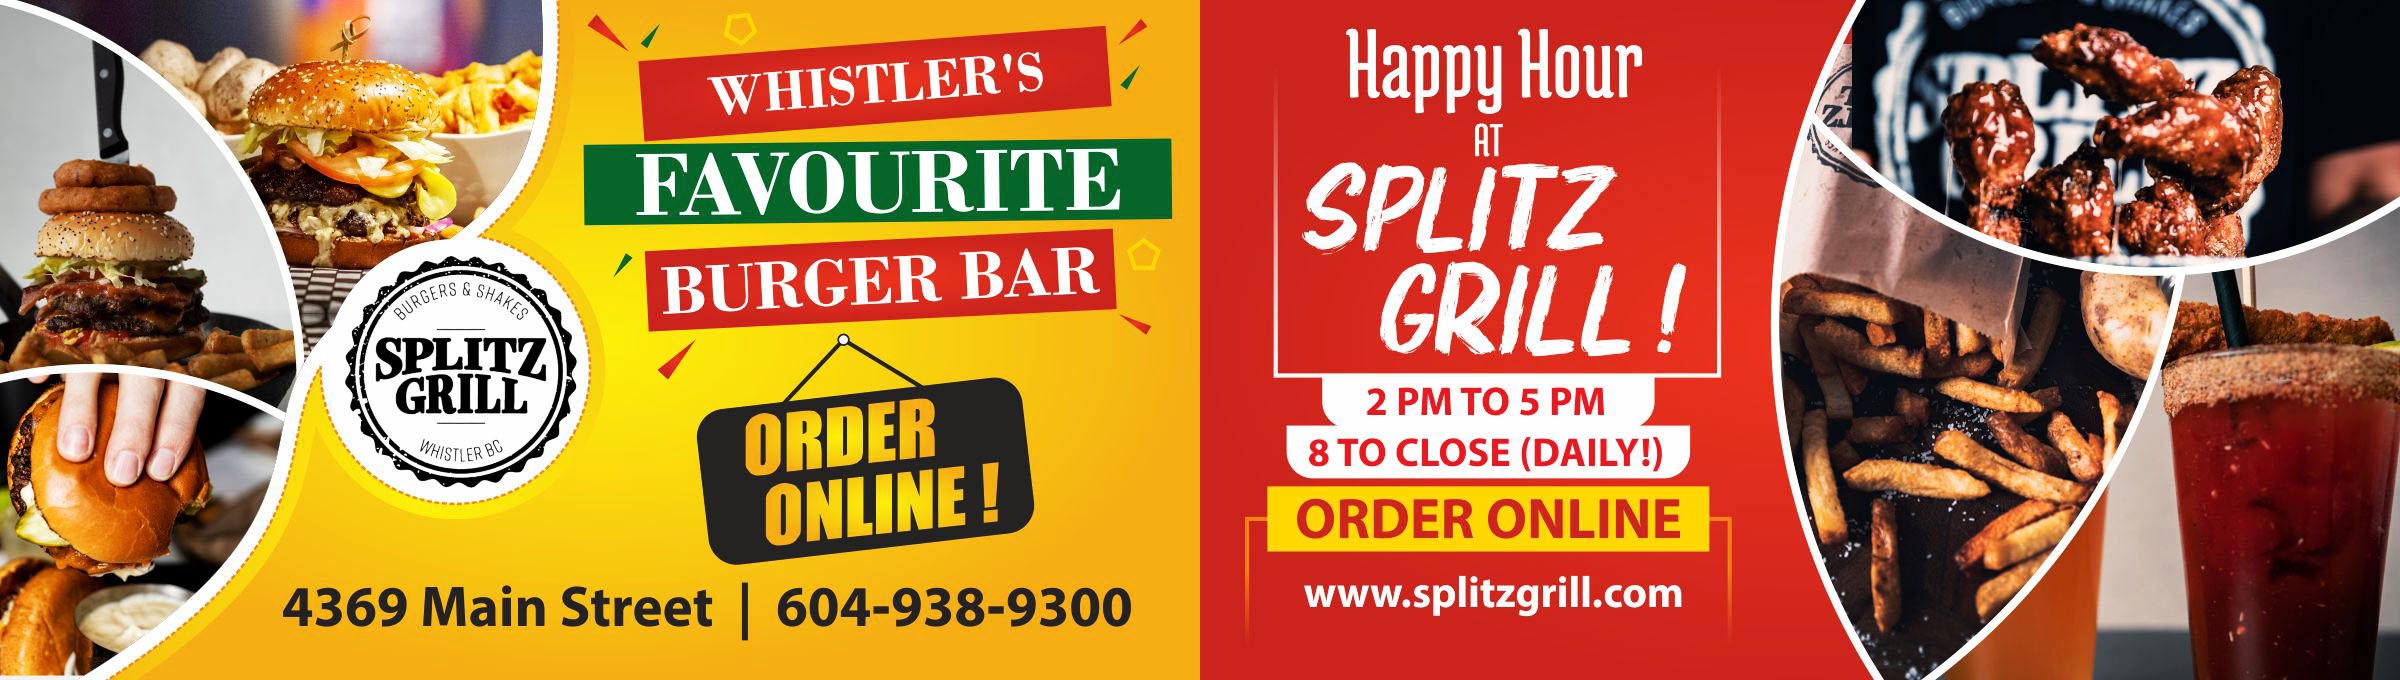 Splitz-Grill.jpg-revised.jpg